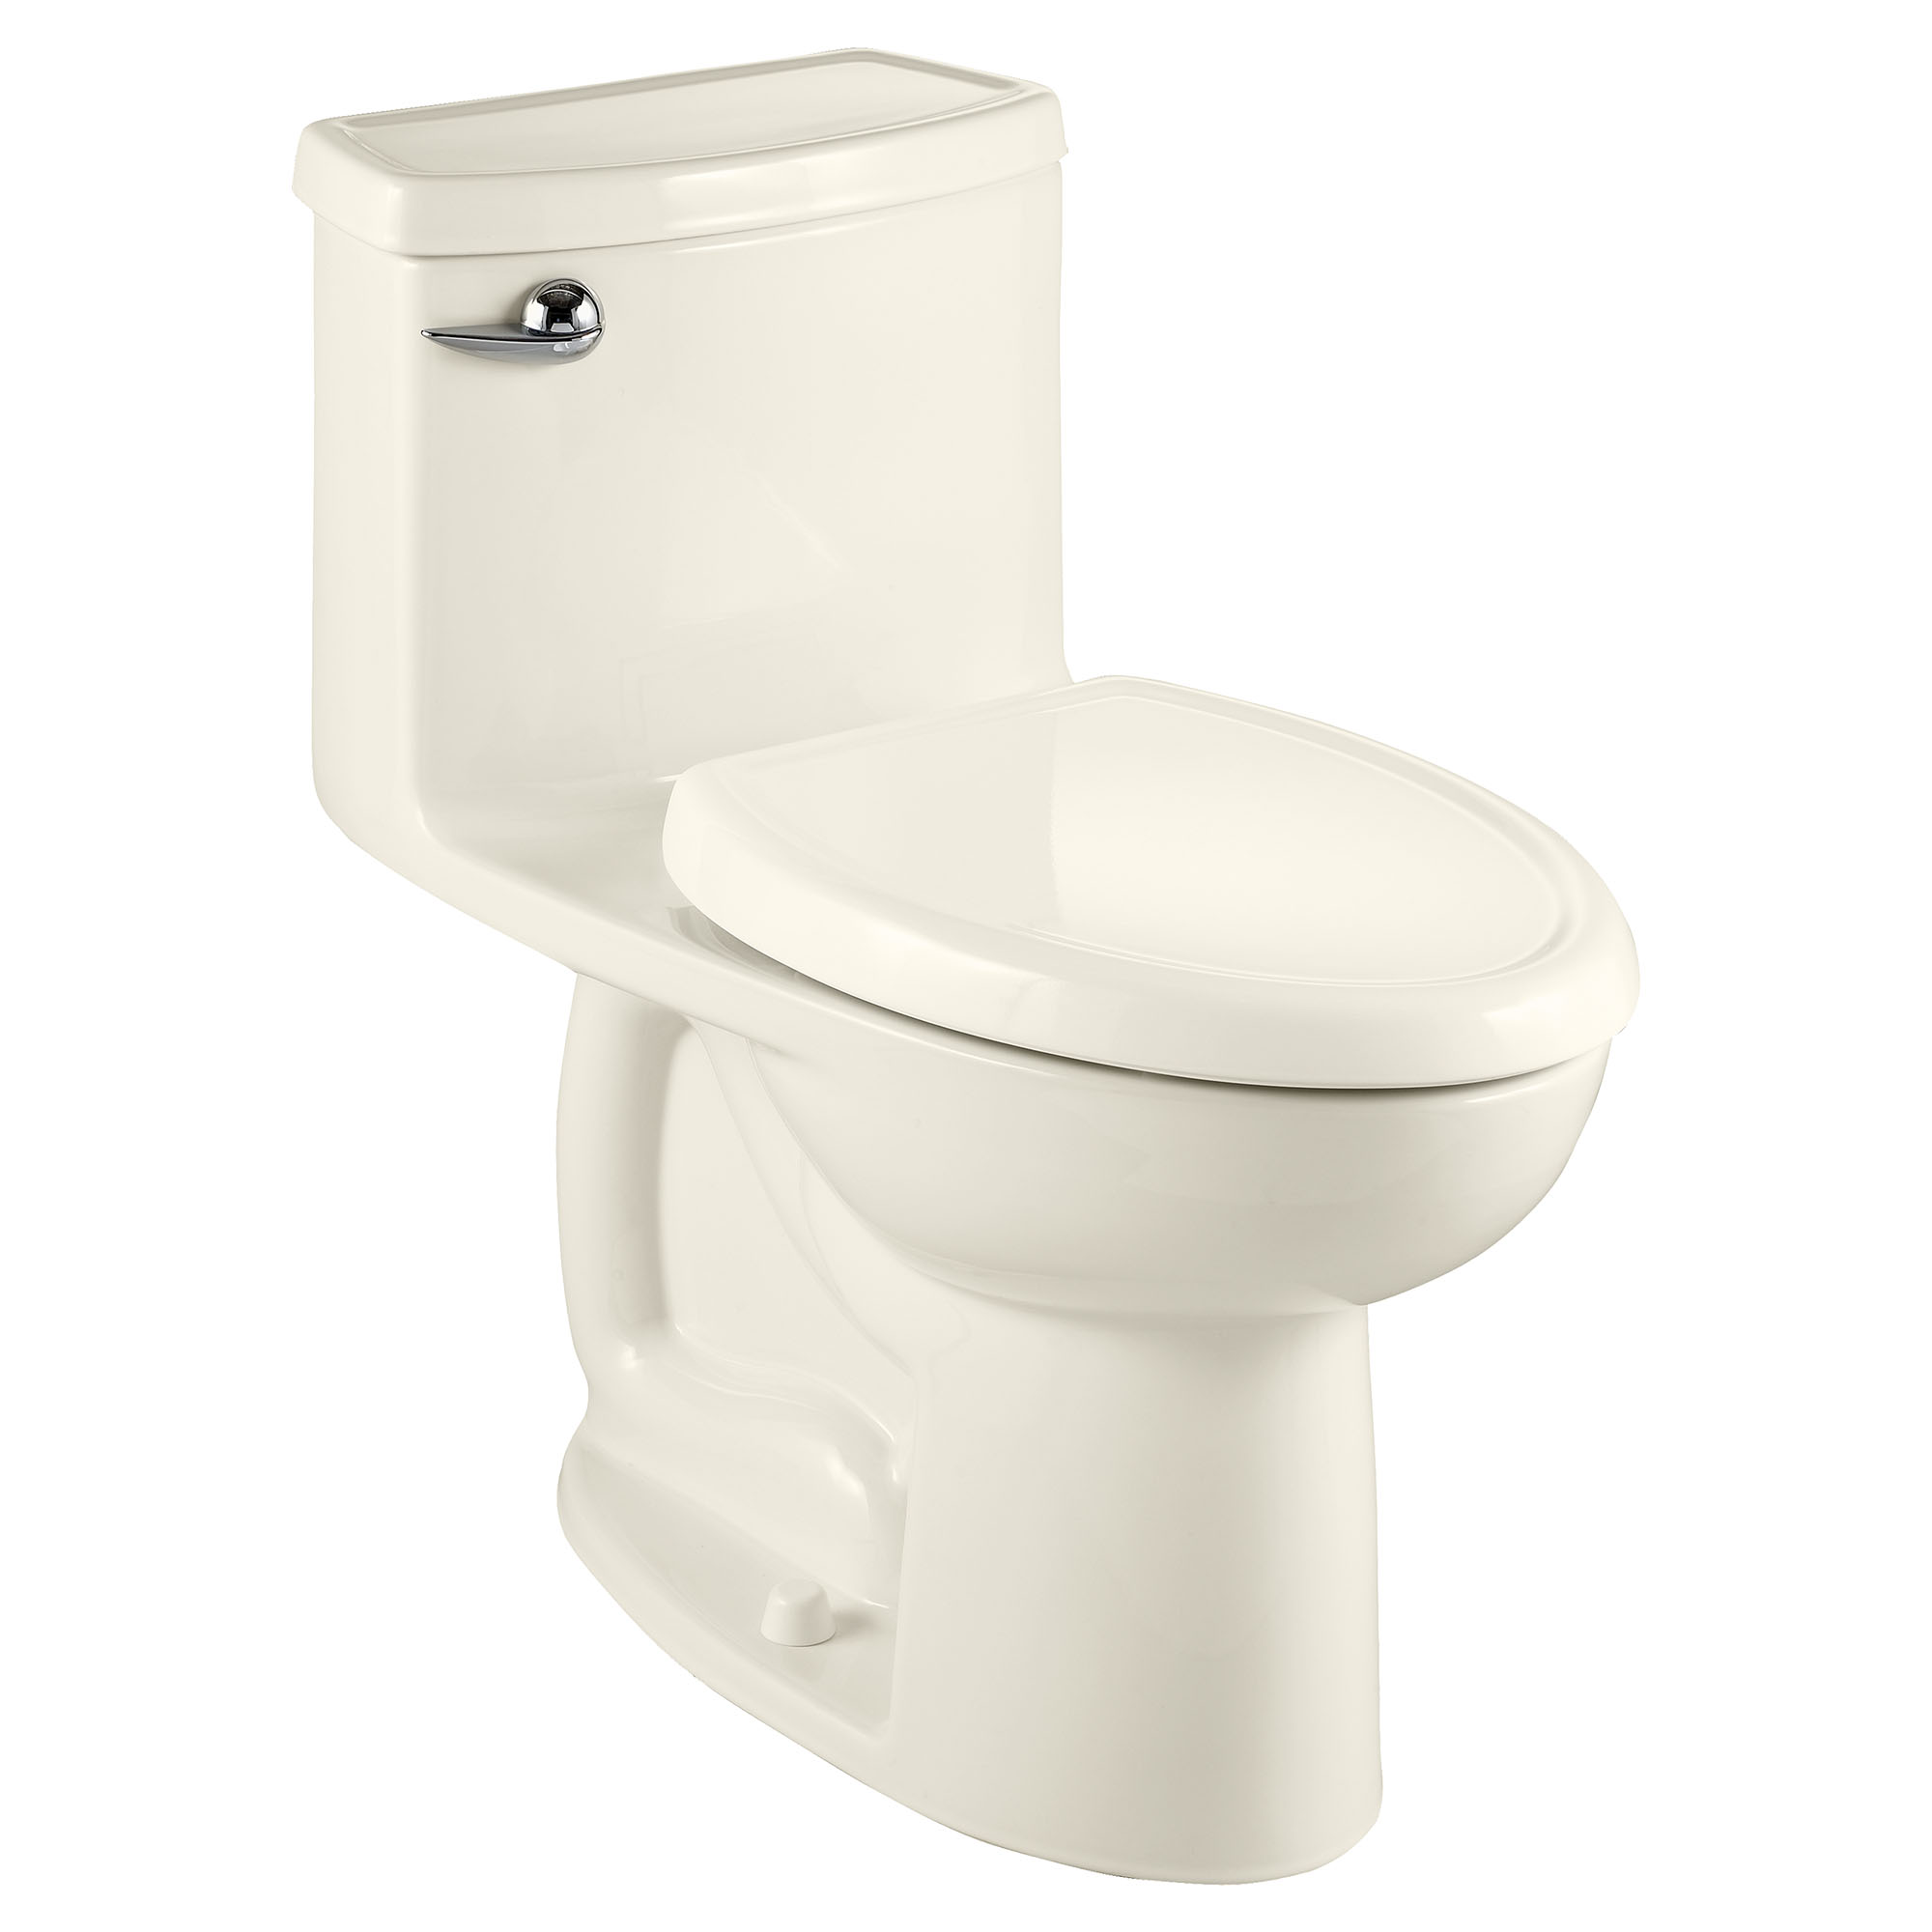 Toilette monopièce compacte Cadet 3, 1,28 gpc/4,8 lpc, à cuvette allongée à hauteur de chaise avec siège